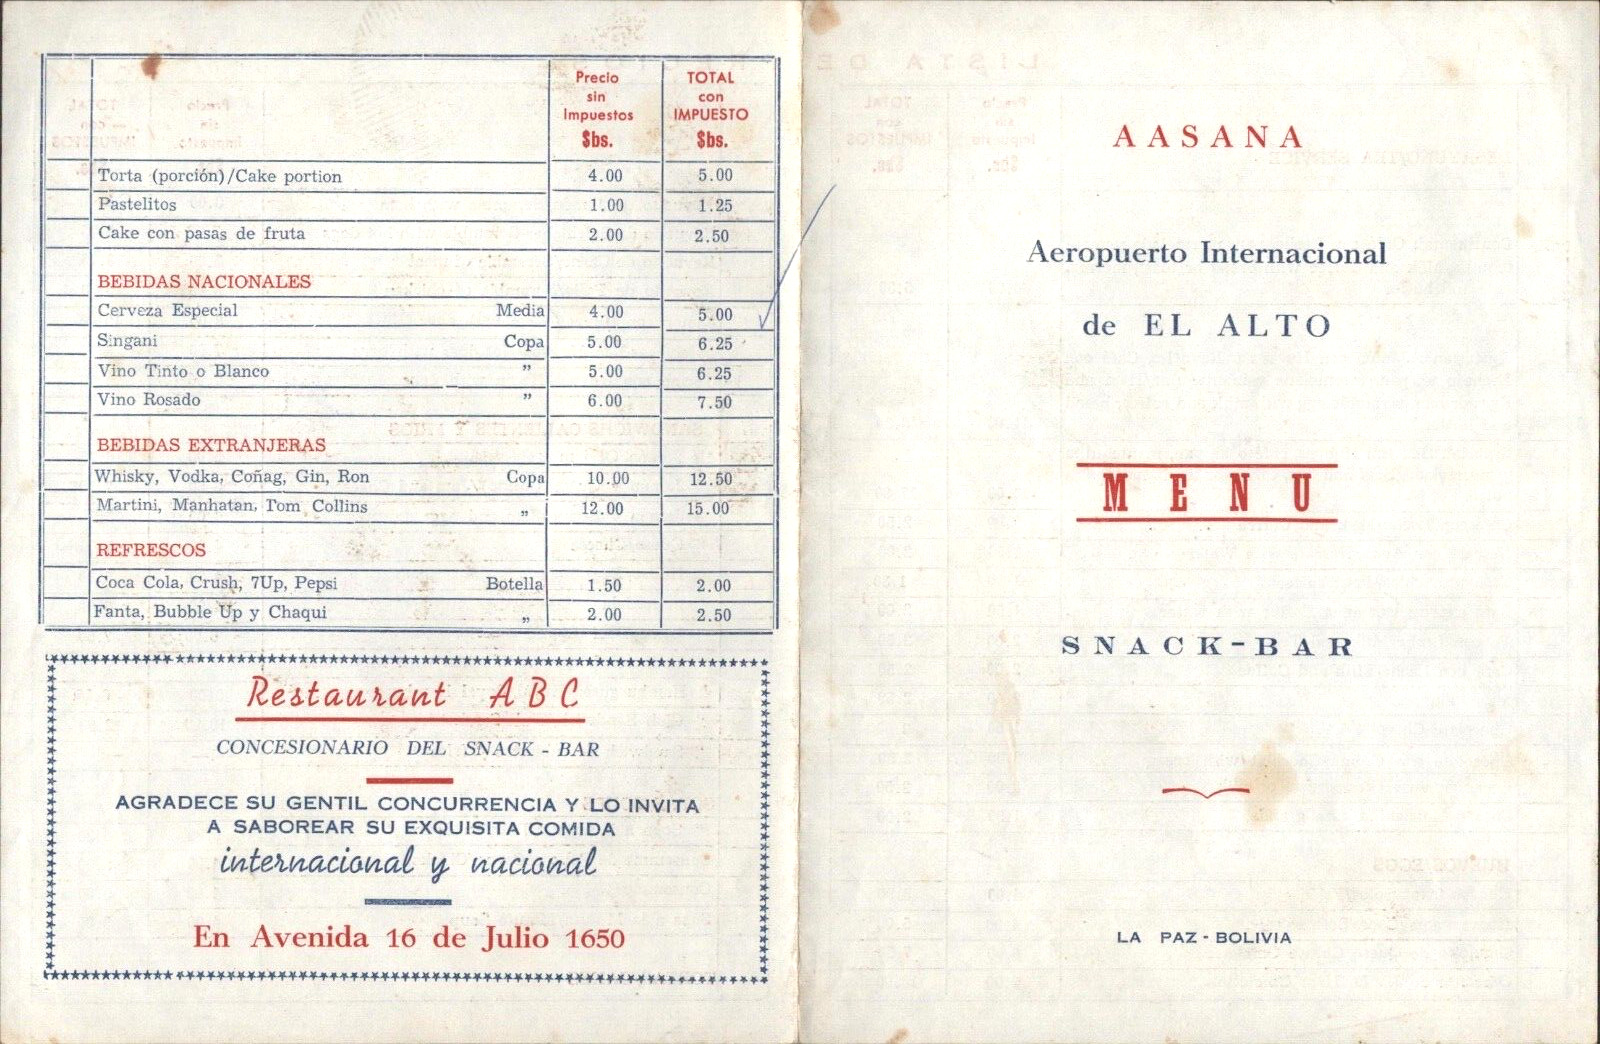 1968 AEROPUERTO INTERNACIONAL DE EL ATO vintage snack bar menu LA PAZ, BOLIVIA